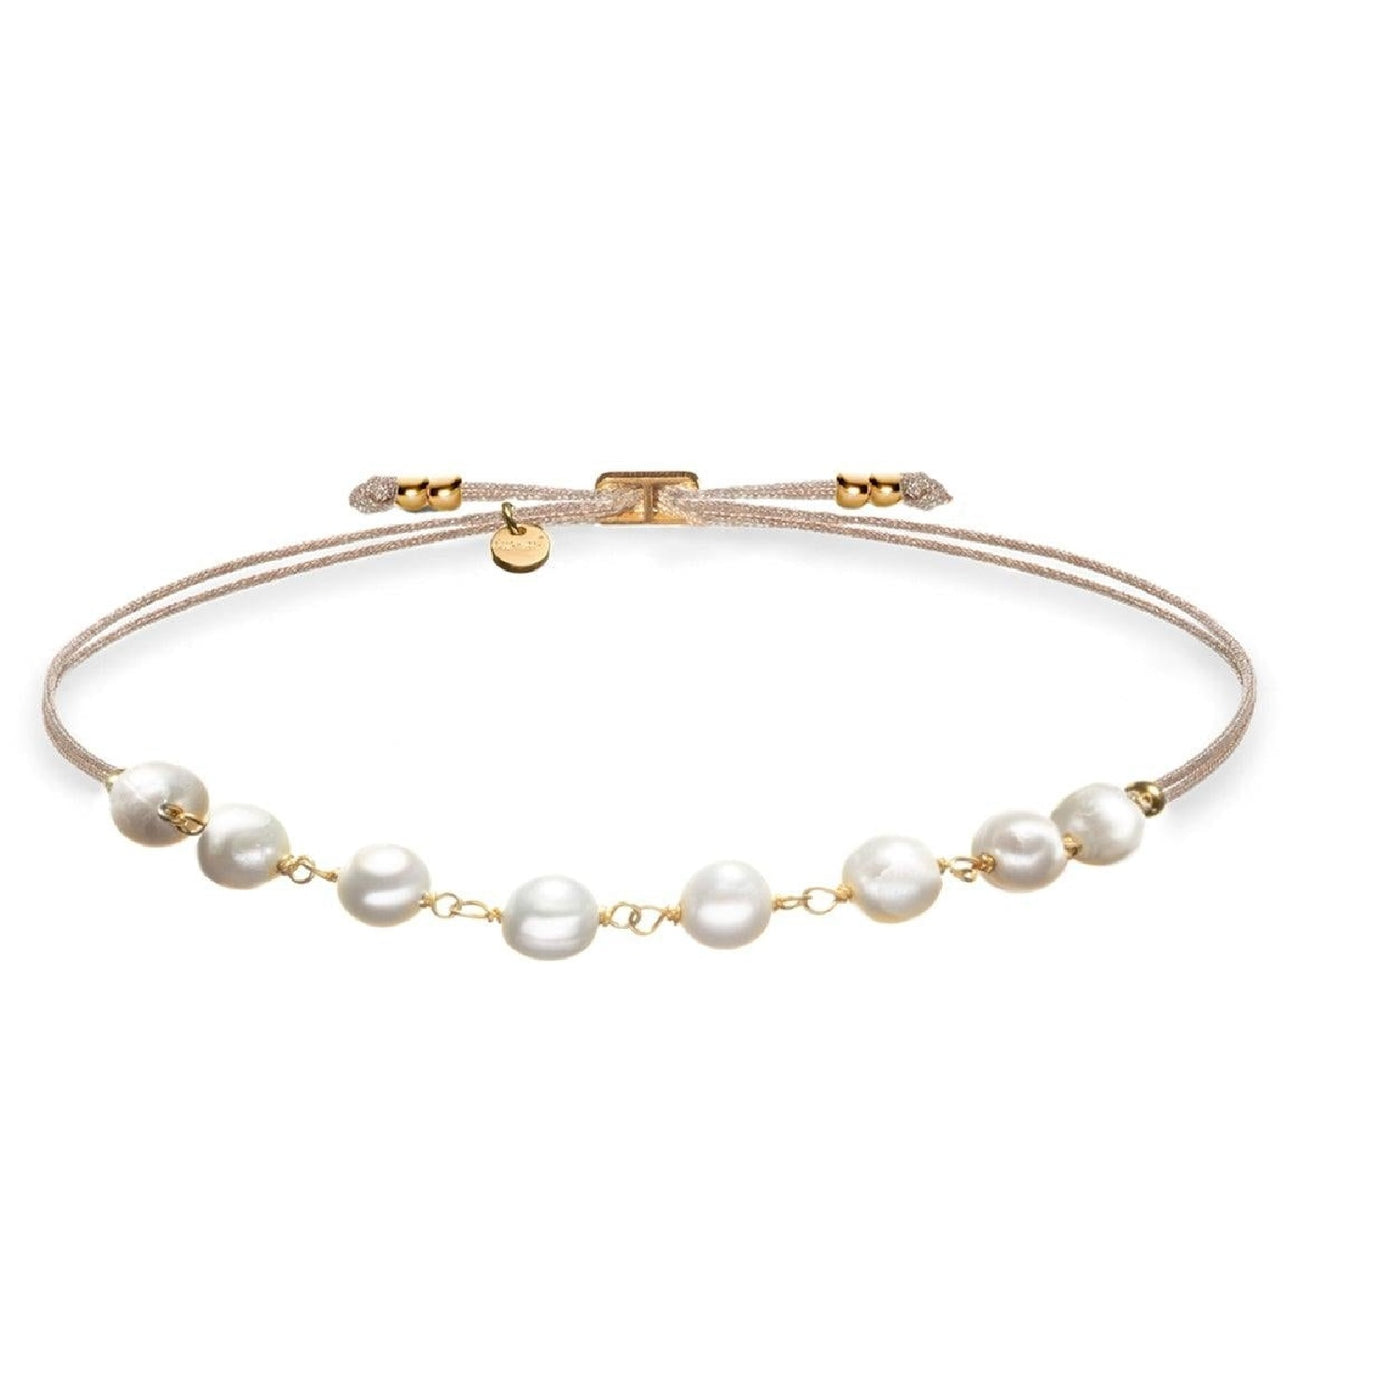 Armband Gold Perlen - Perlenliebe